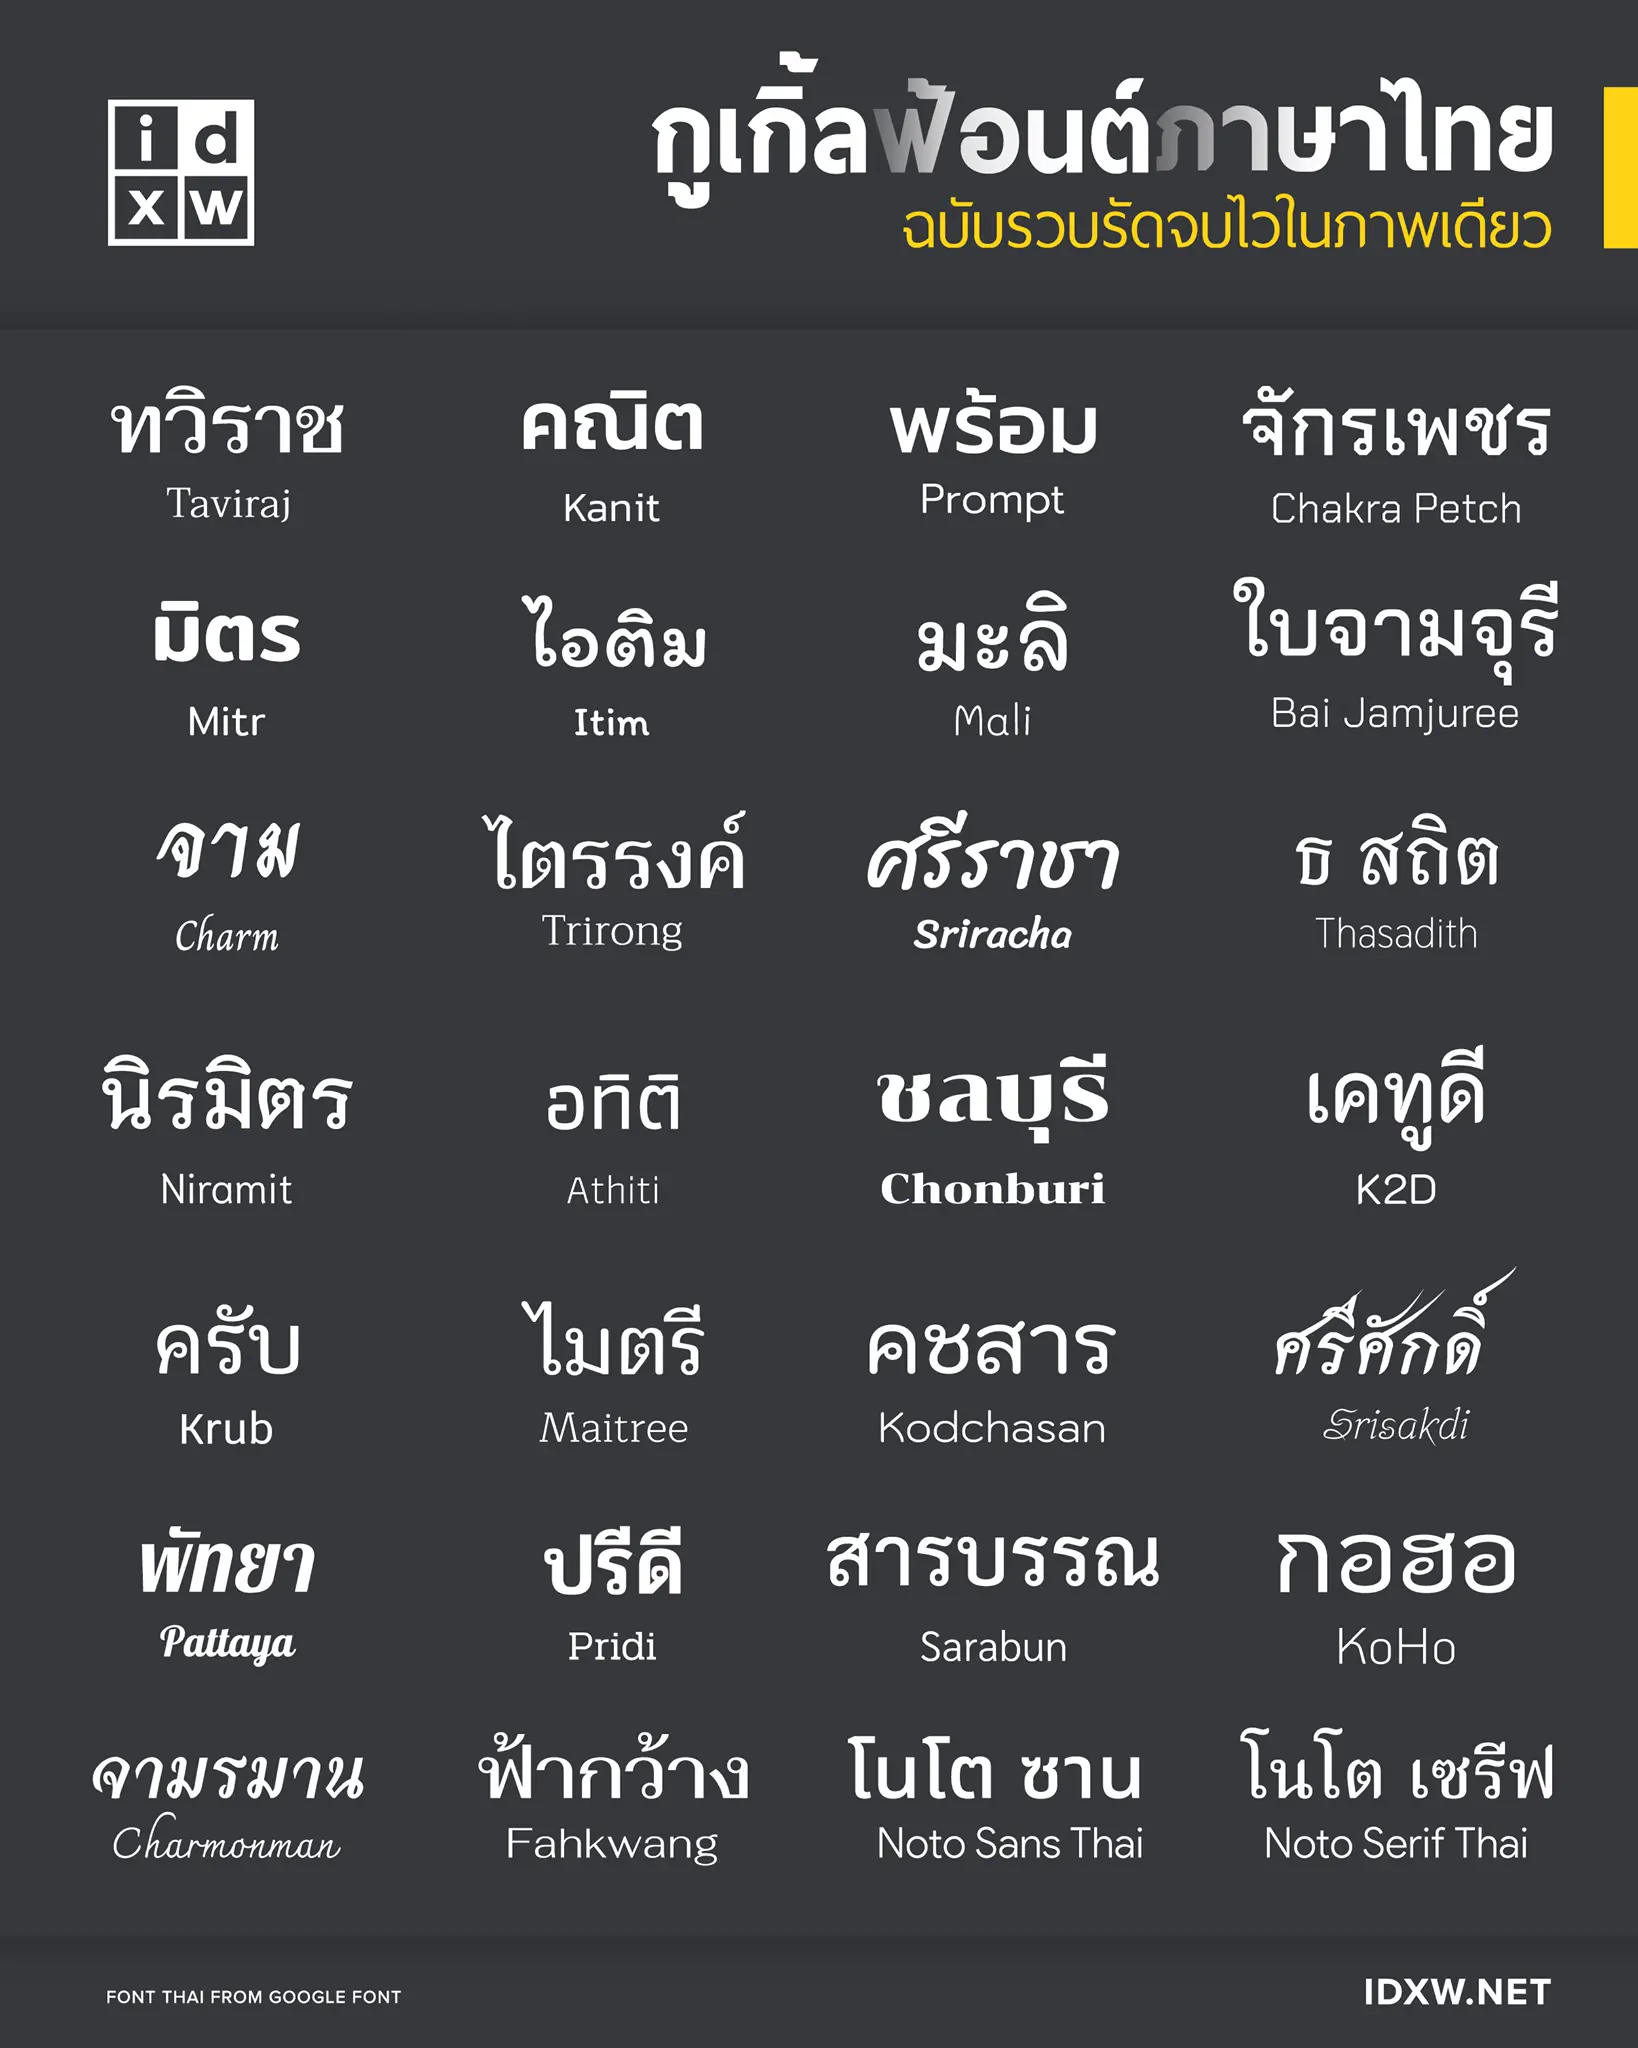 แนะนำแหล่งดาวน์โหลดฟอนต์ ภาษาไทย สวย ถูกลิขสิทธิ์จาก Google ดาวน์โหลดฟรี!!  - ครูอาชีพดอทคอม มากกว่าอาชีพครู...คือการเป็นครูมืออาชีพ